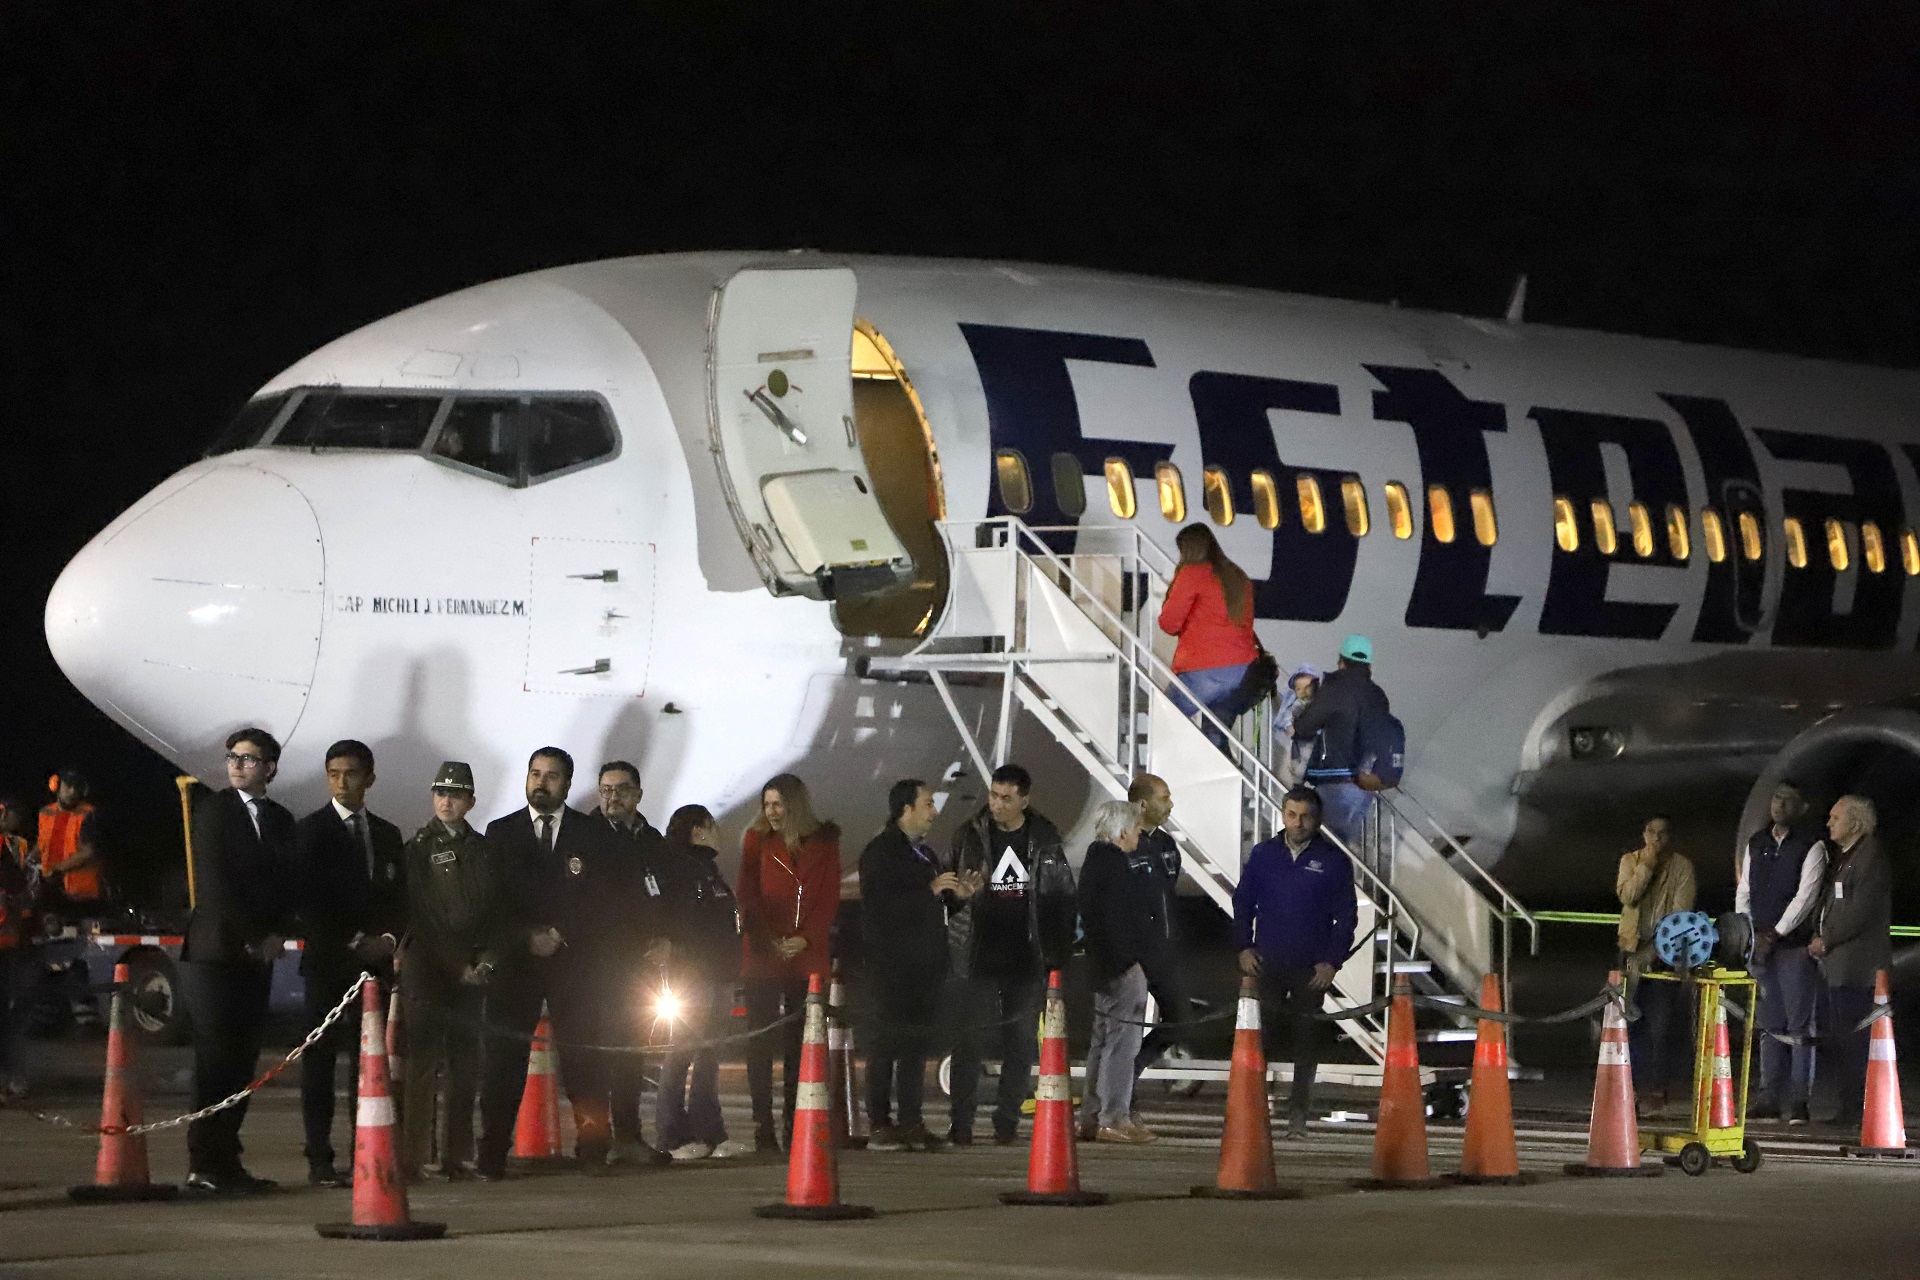 El avión que llevó a venezolanos desde Chile (AGUSTIN MERCADO / AFP)